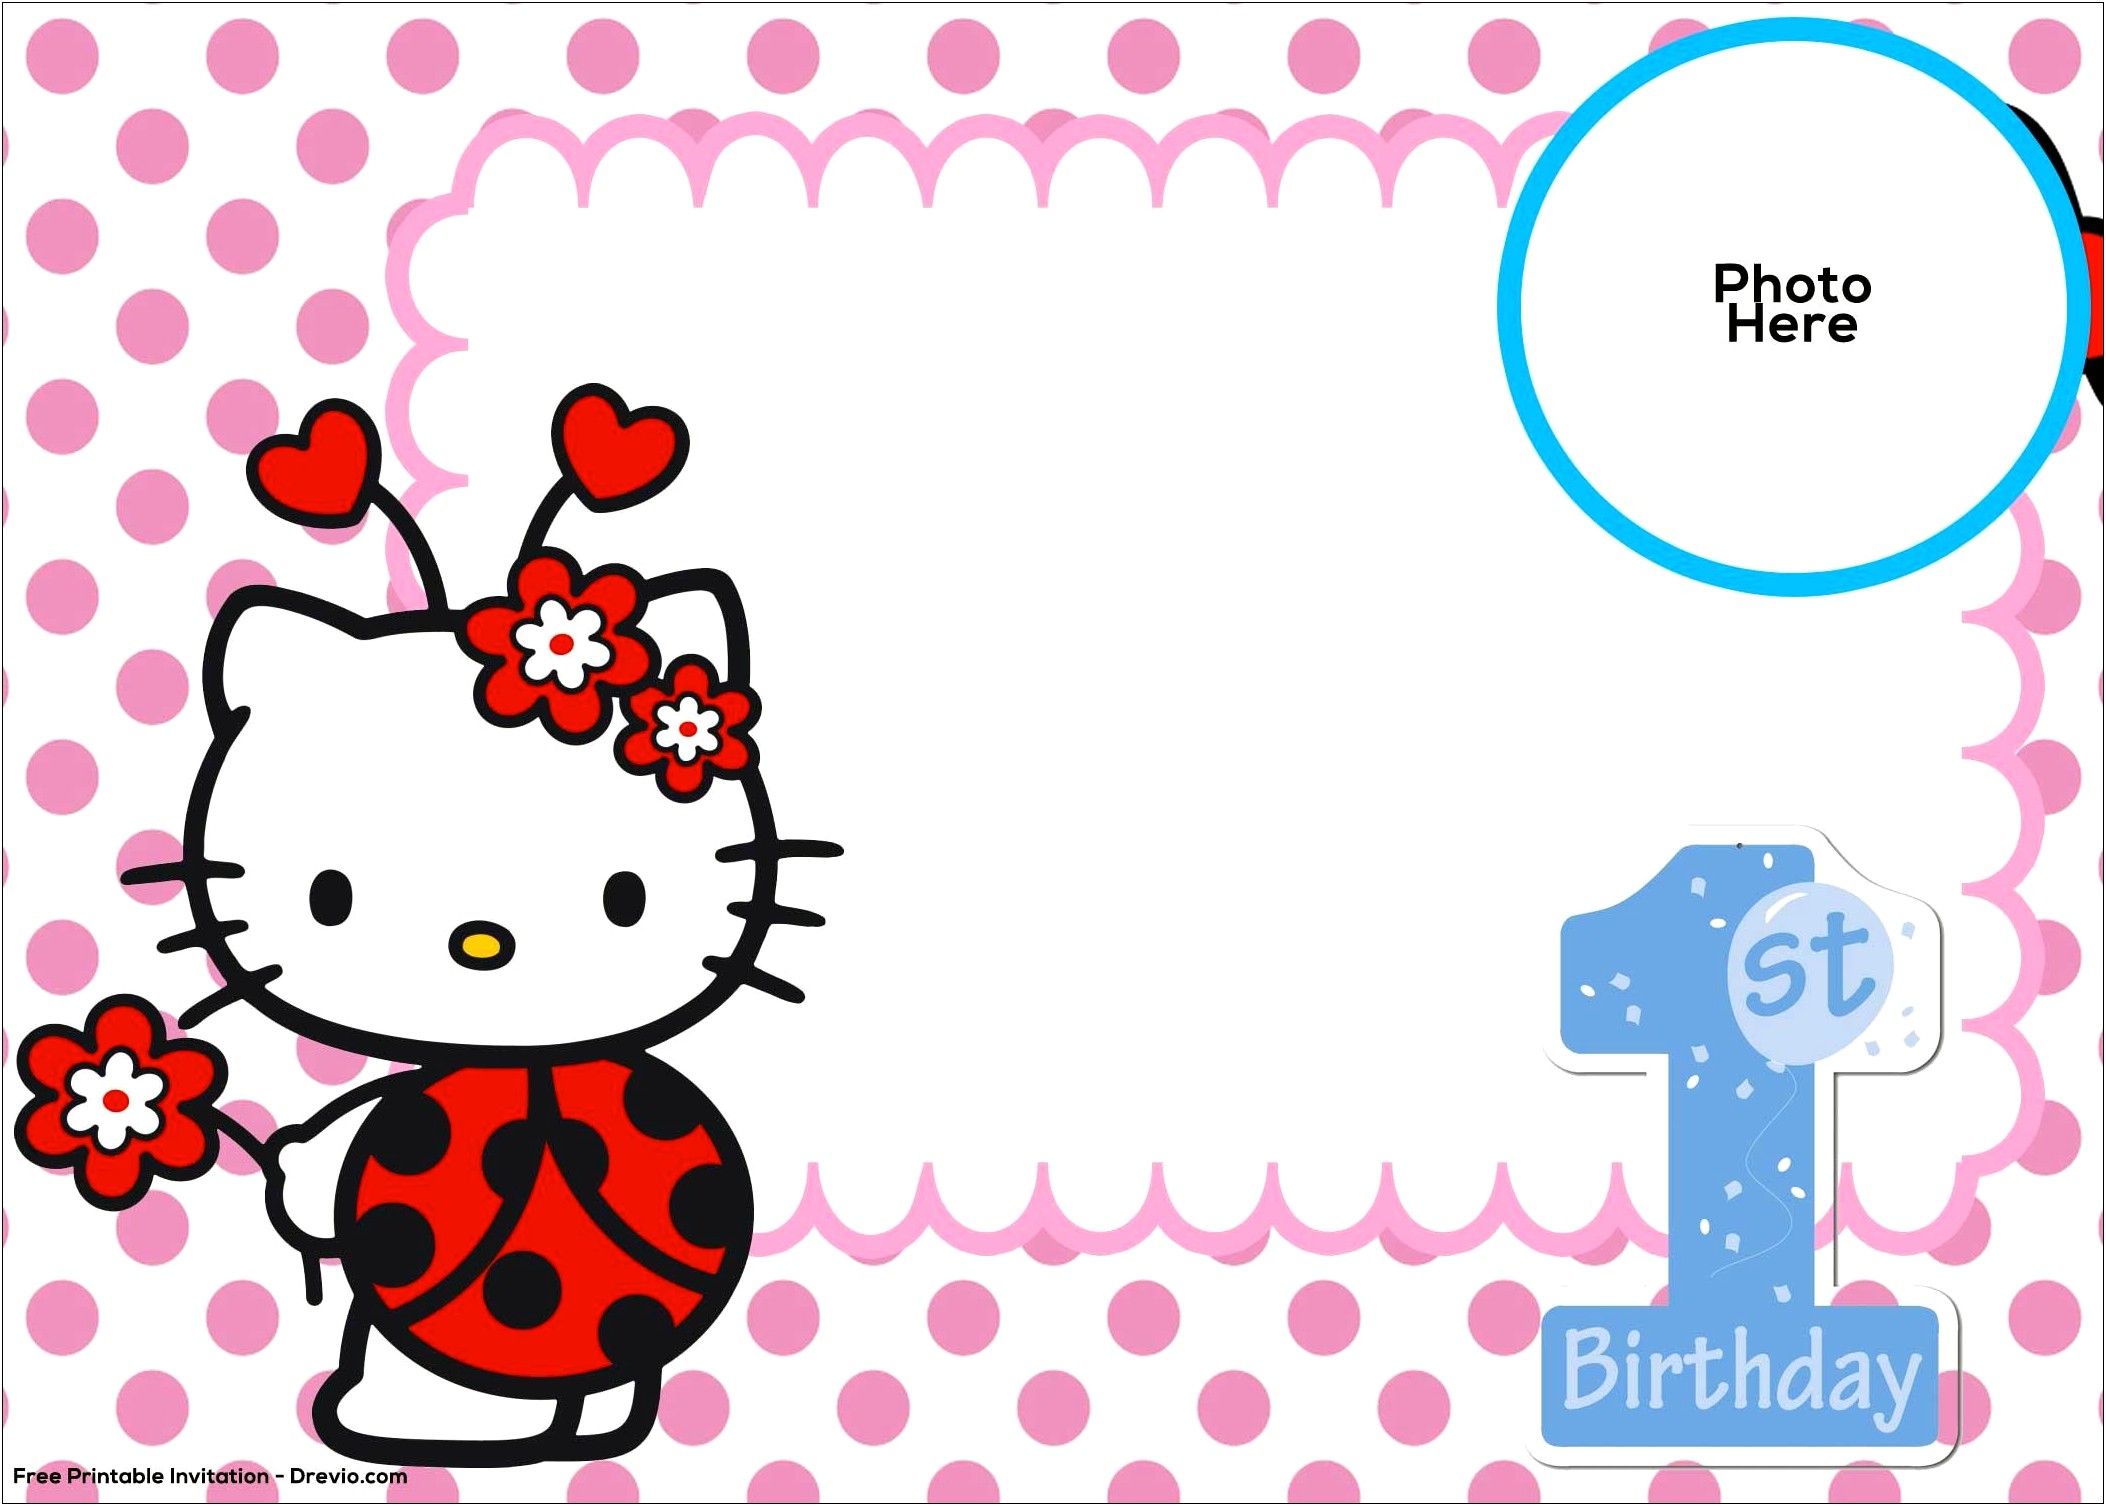 Free Hello Kitty Birthday Party Invitation Templates